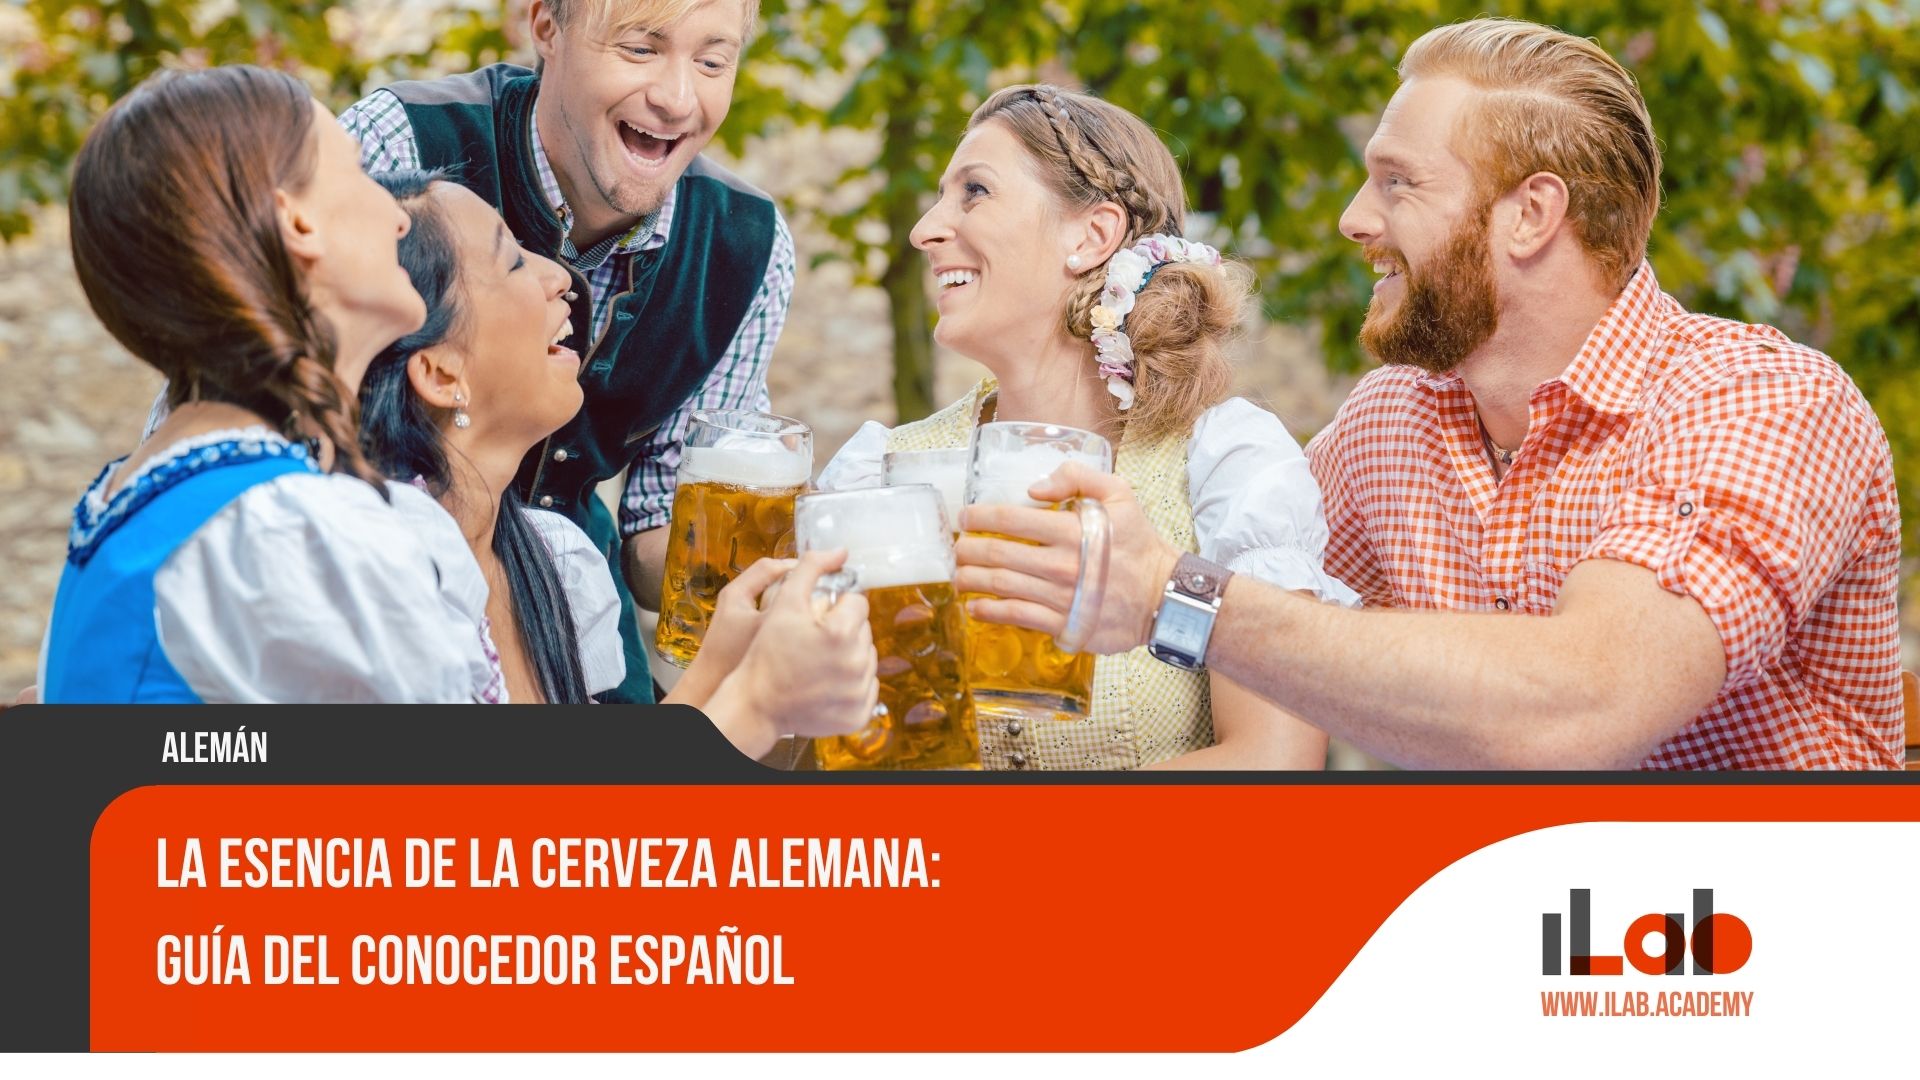 La Esencia de la Cerveza Alemana: Guía del Conocedor Español